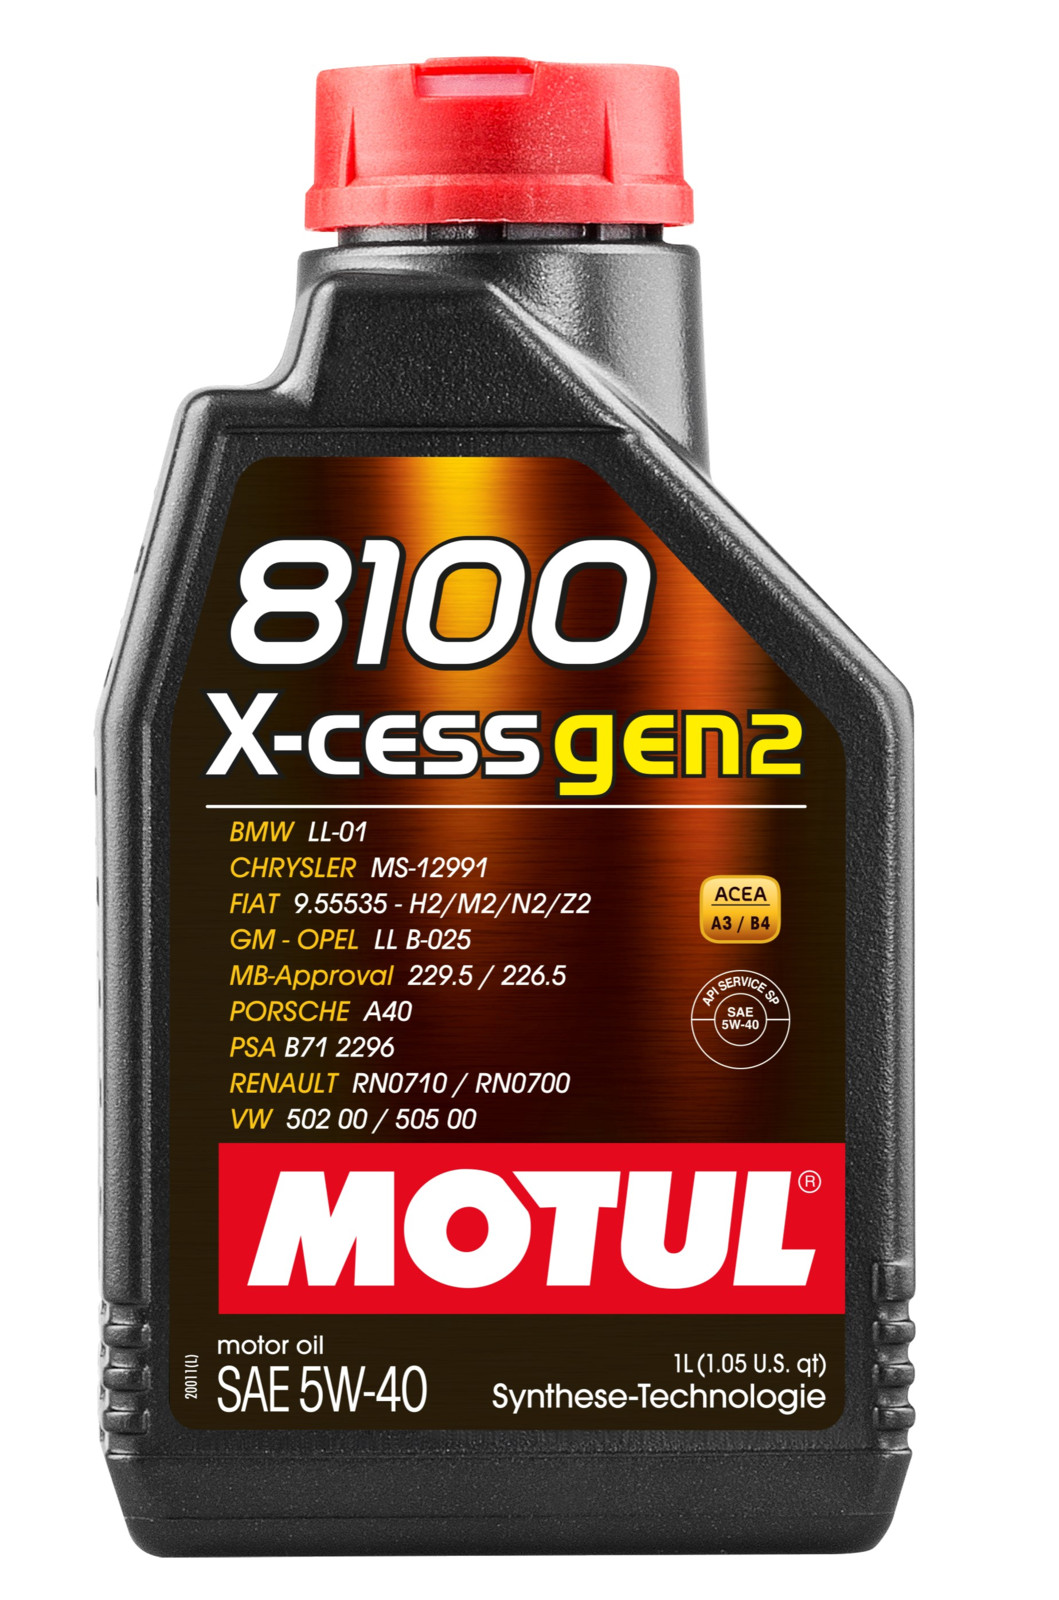 Ab sofort ist das neue Motul 8100 X-CESS GEN2 5W-40 erhältlich. 